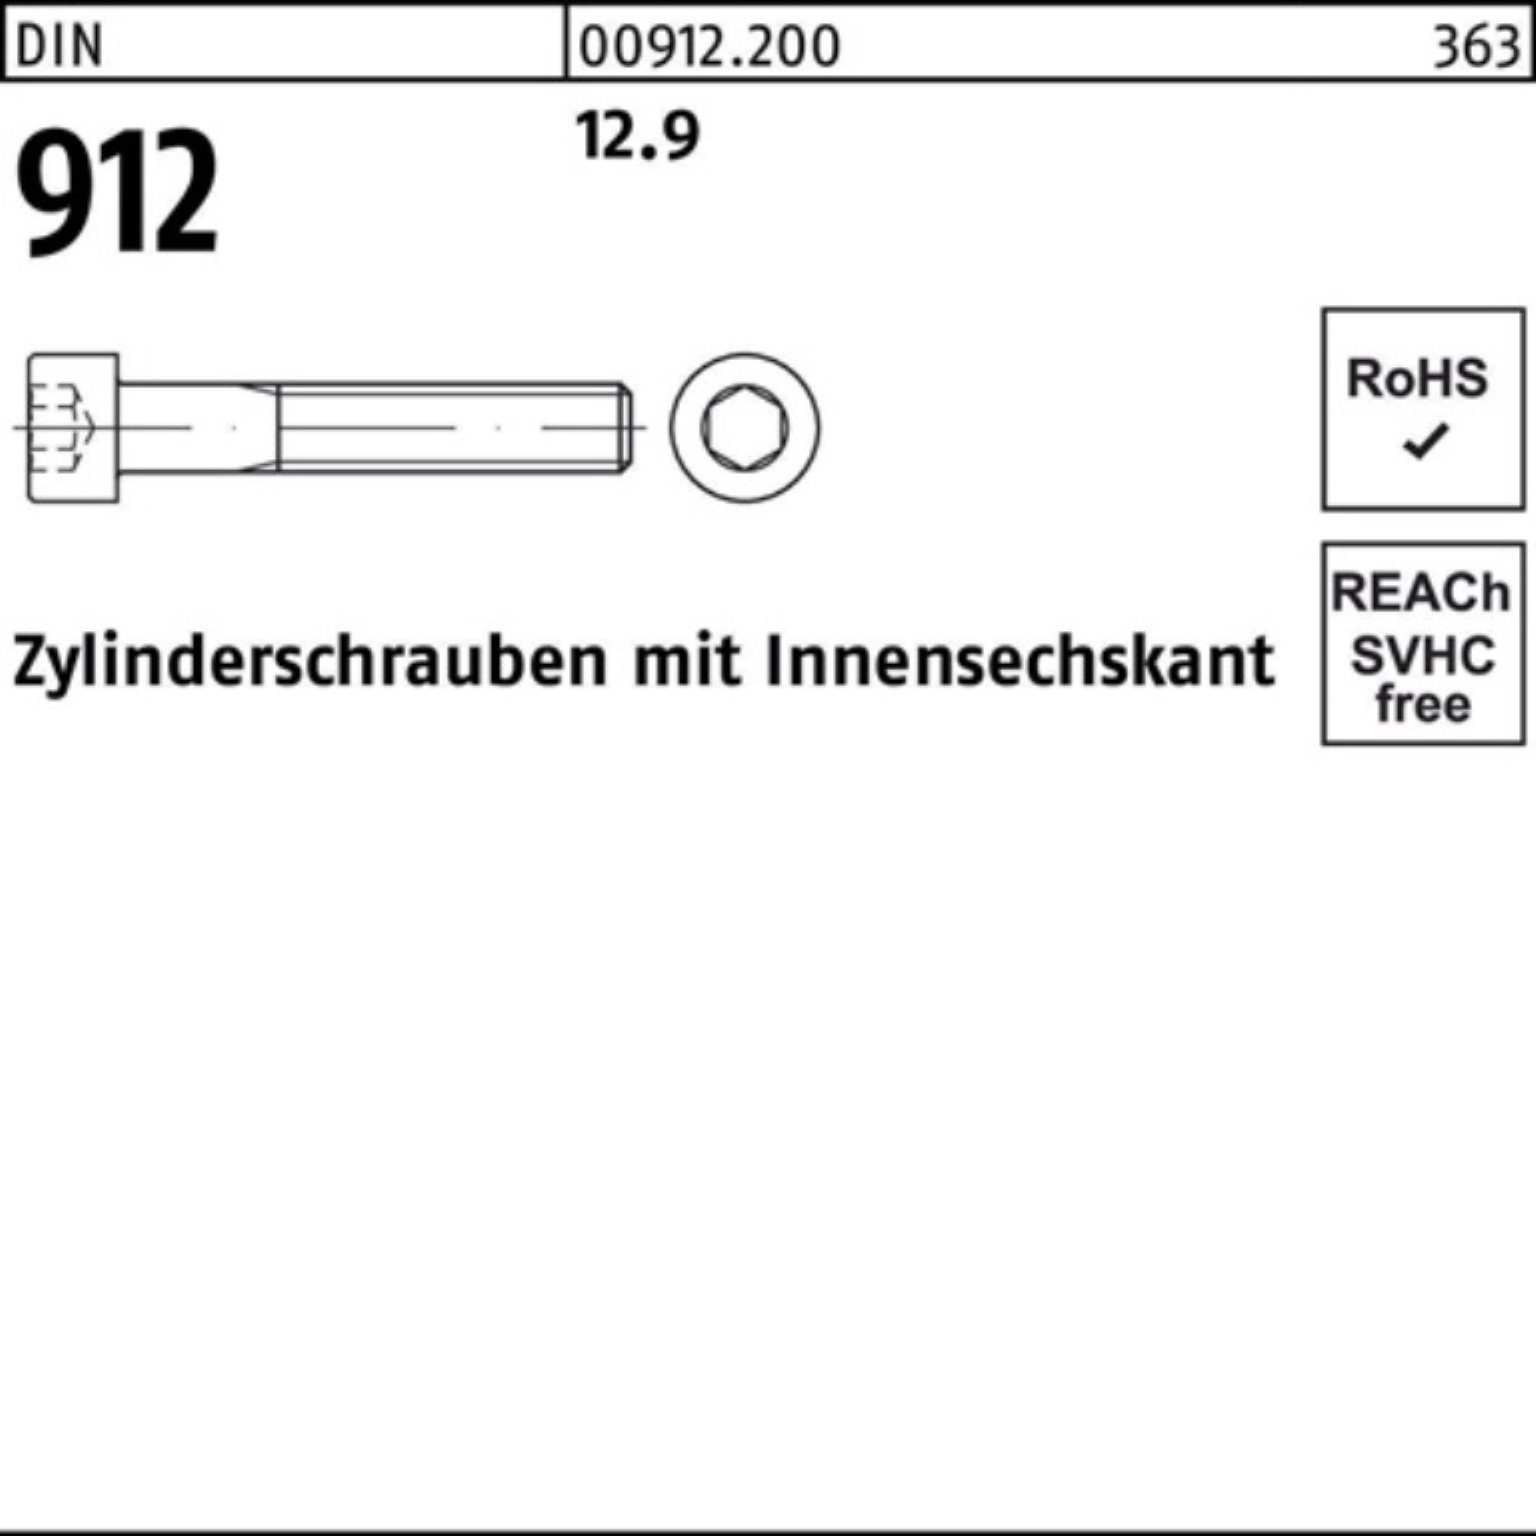 M4x 12.9 Innen-6kt 912 Stück Zylinderschraube DIN Zylinderschraube 100er Pack Reyher D 100 20